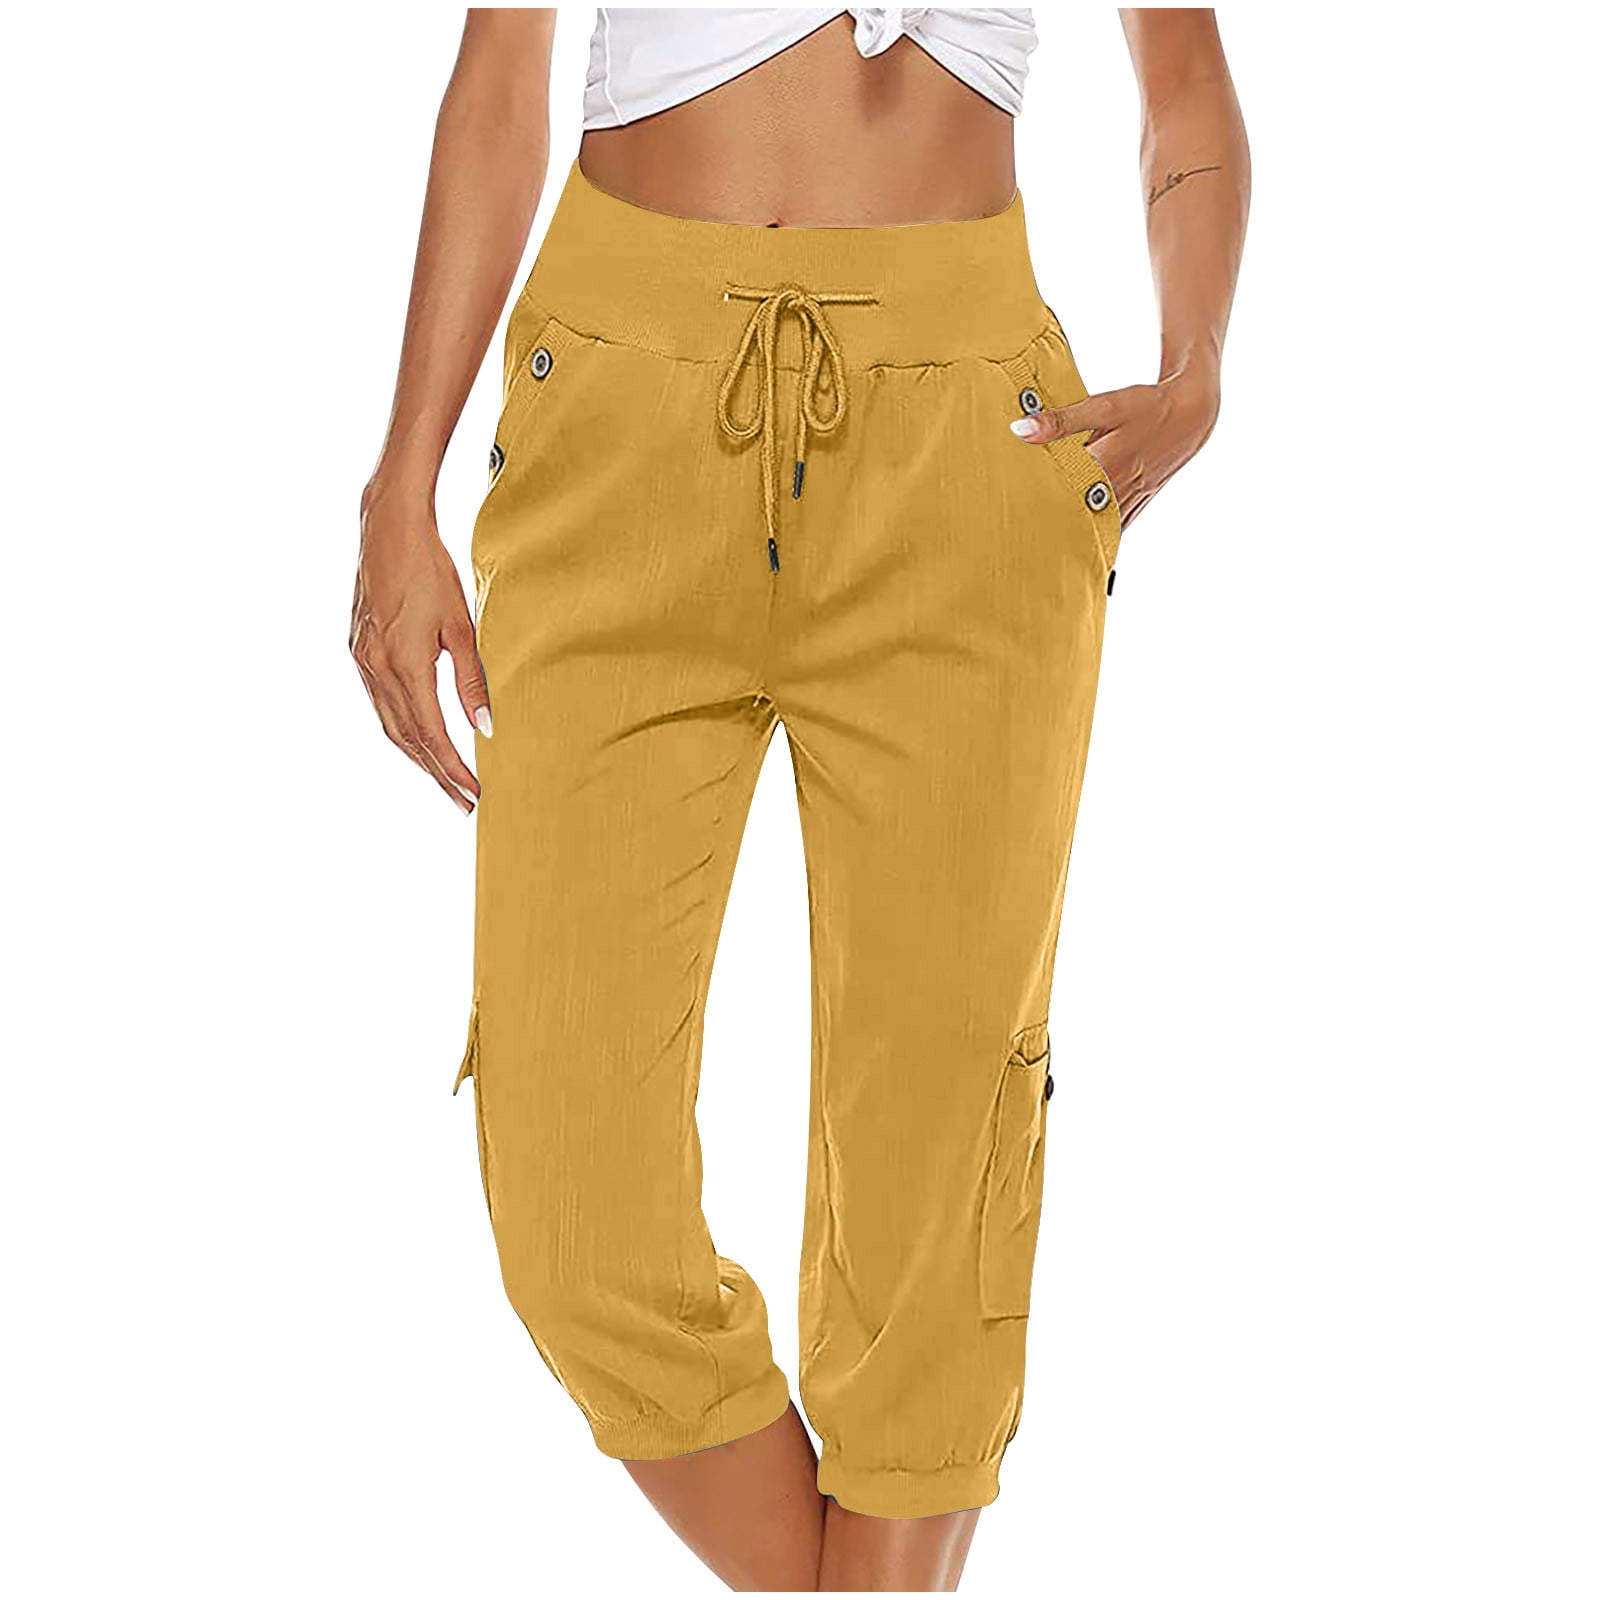 https://i5.walmartimages.com/seo/Capri-Pants-for-Women-Cotton-Linen-Plus-Size-Cargo-Pants-Capris-Elastic-High-Waisted-3-4-Slacks-with-Multi-Pockets-Small-Yellow_84a4020e-bb13-4928-8842-ad777a9afd08.86559318e619e8e56e5c57c09e6be504.jpeg